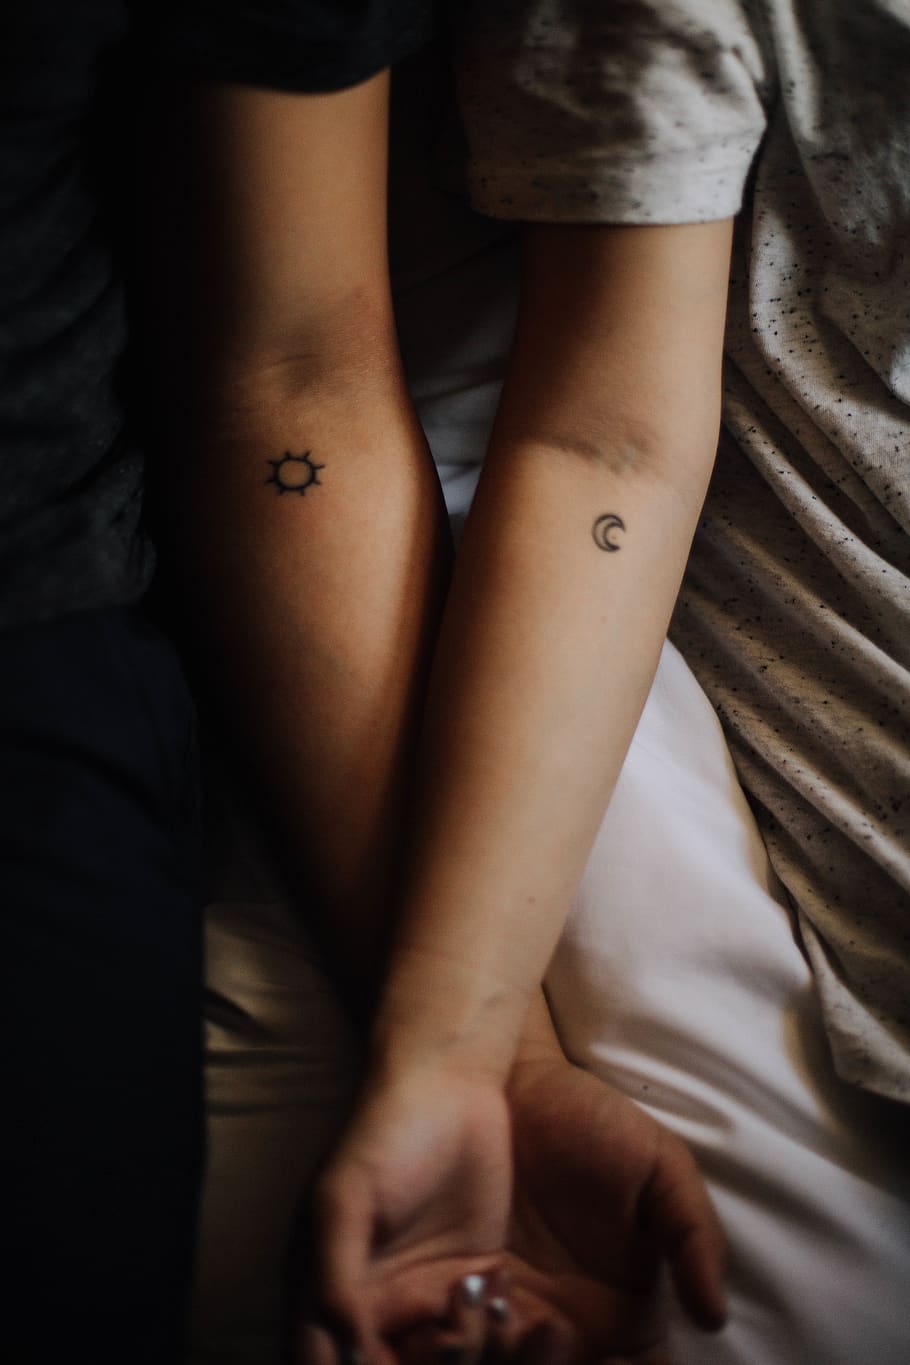 pasangan, cinta, orang, pria, wanita, tangan, tato, bintang, bulan, manis